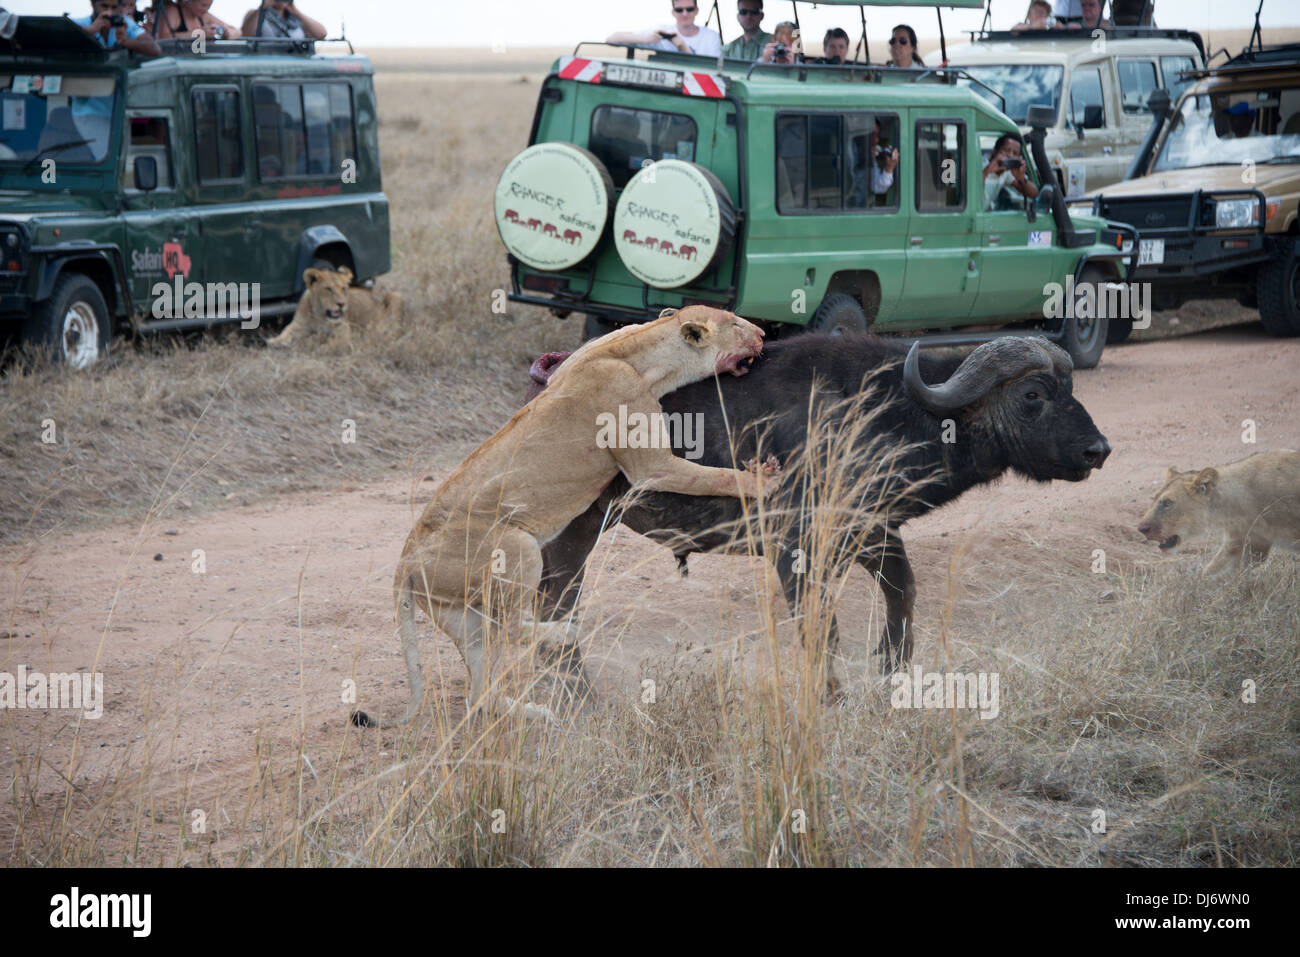 Un groupe de lions attaquant et blessant mortellement un buffle tandis que les visiteurs avec horreur Banque D'Images